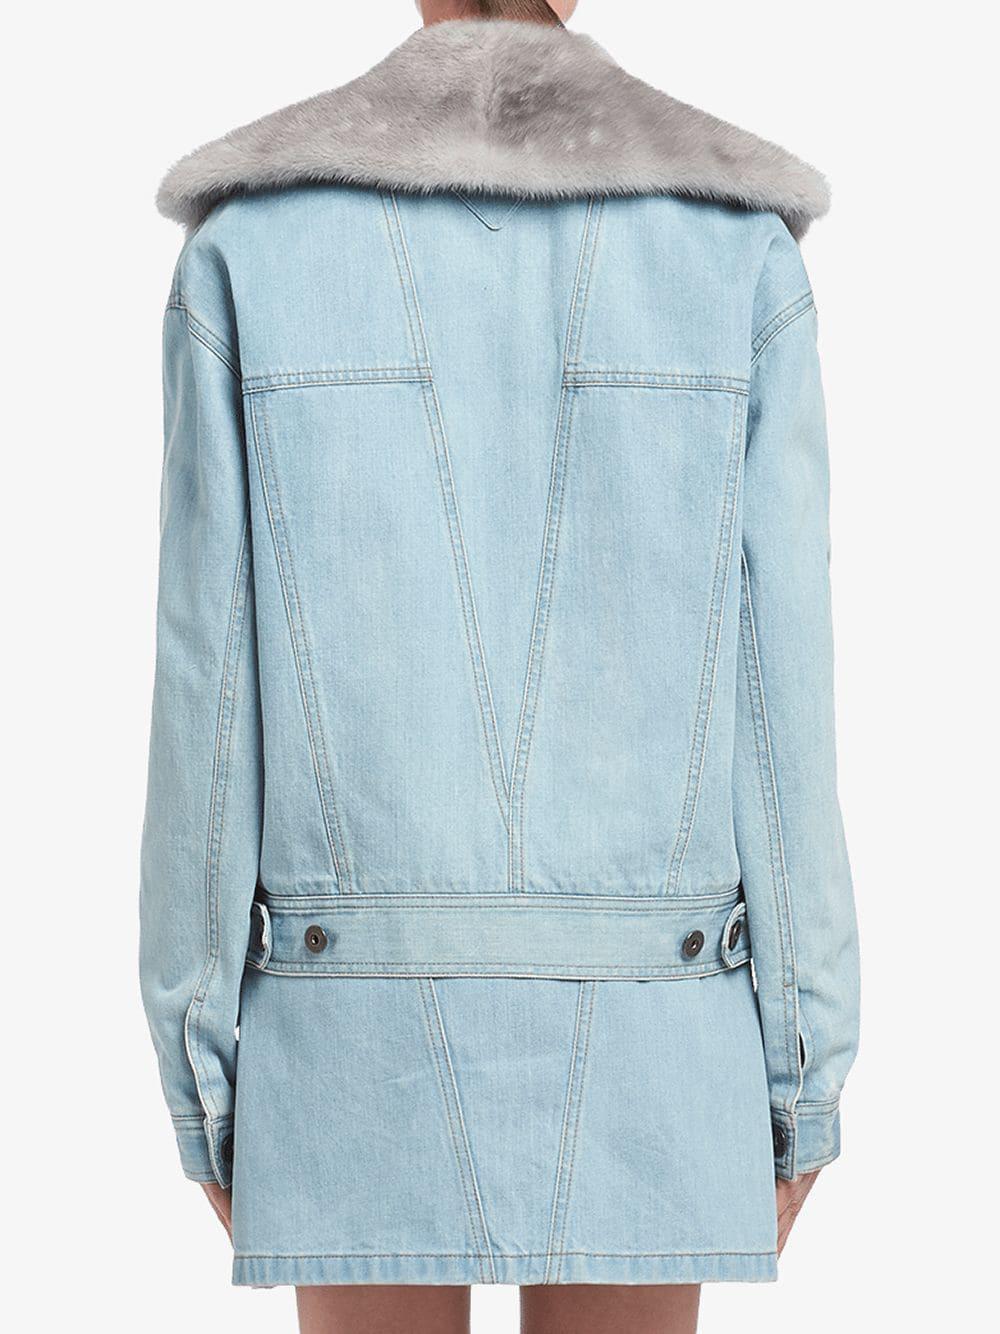 Prada Denim Jacket With Fur Collar in Blue - Lyst